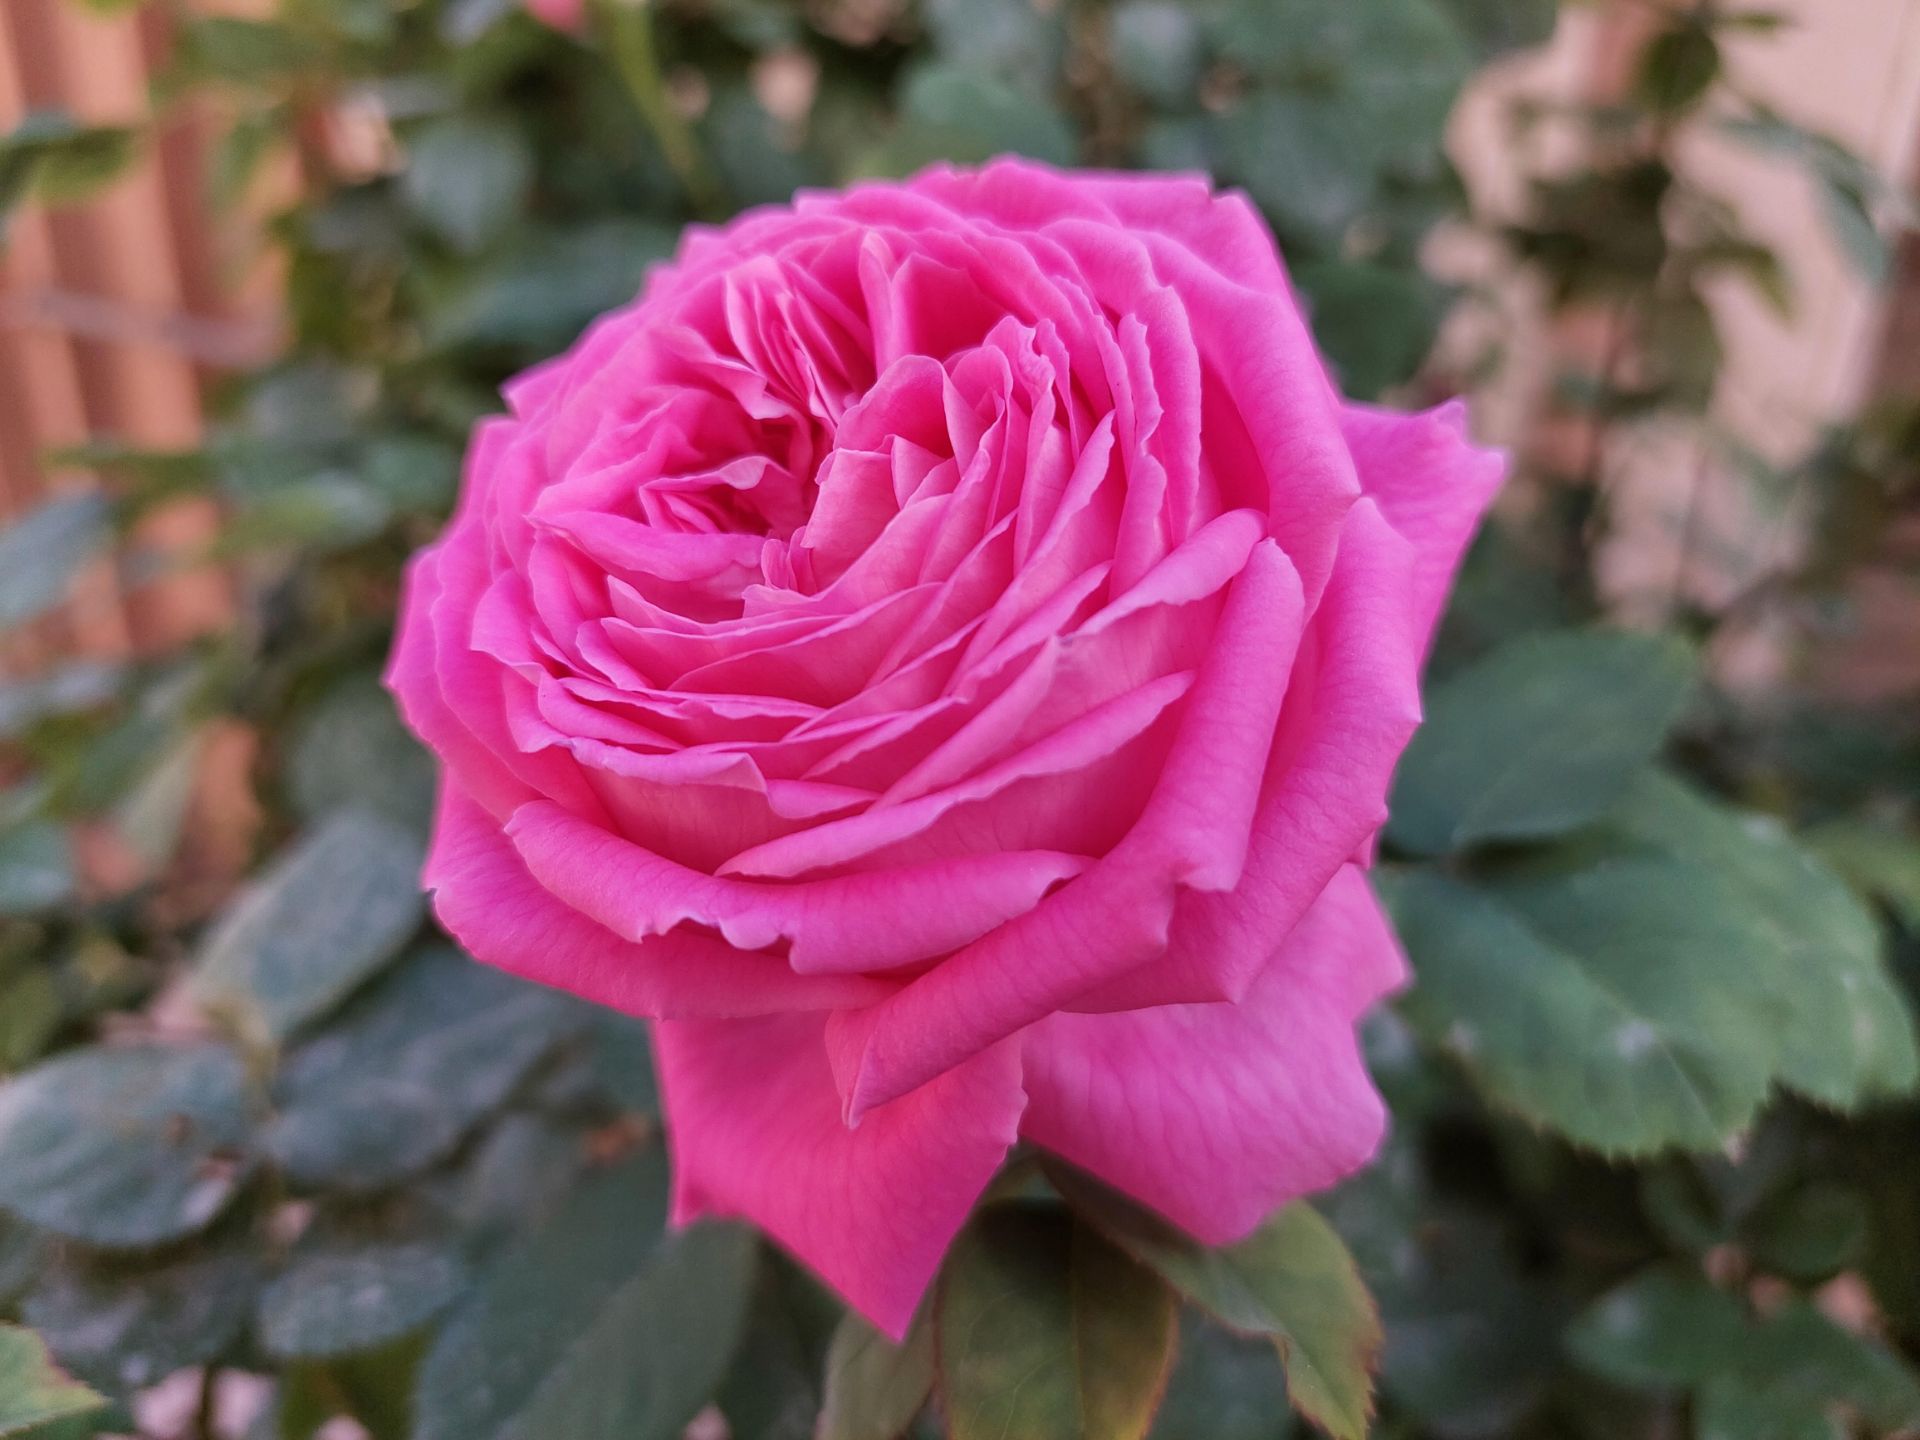 عکس نمونه دوربین واید گلکسی A72 در نور مناسب - تصویری از یک گل رز